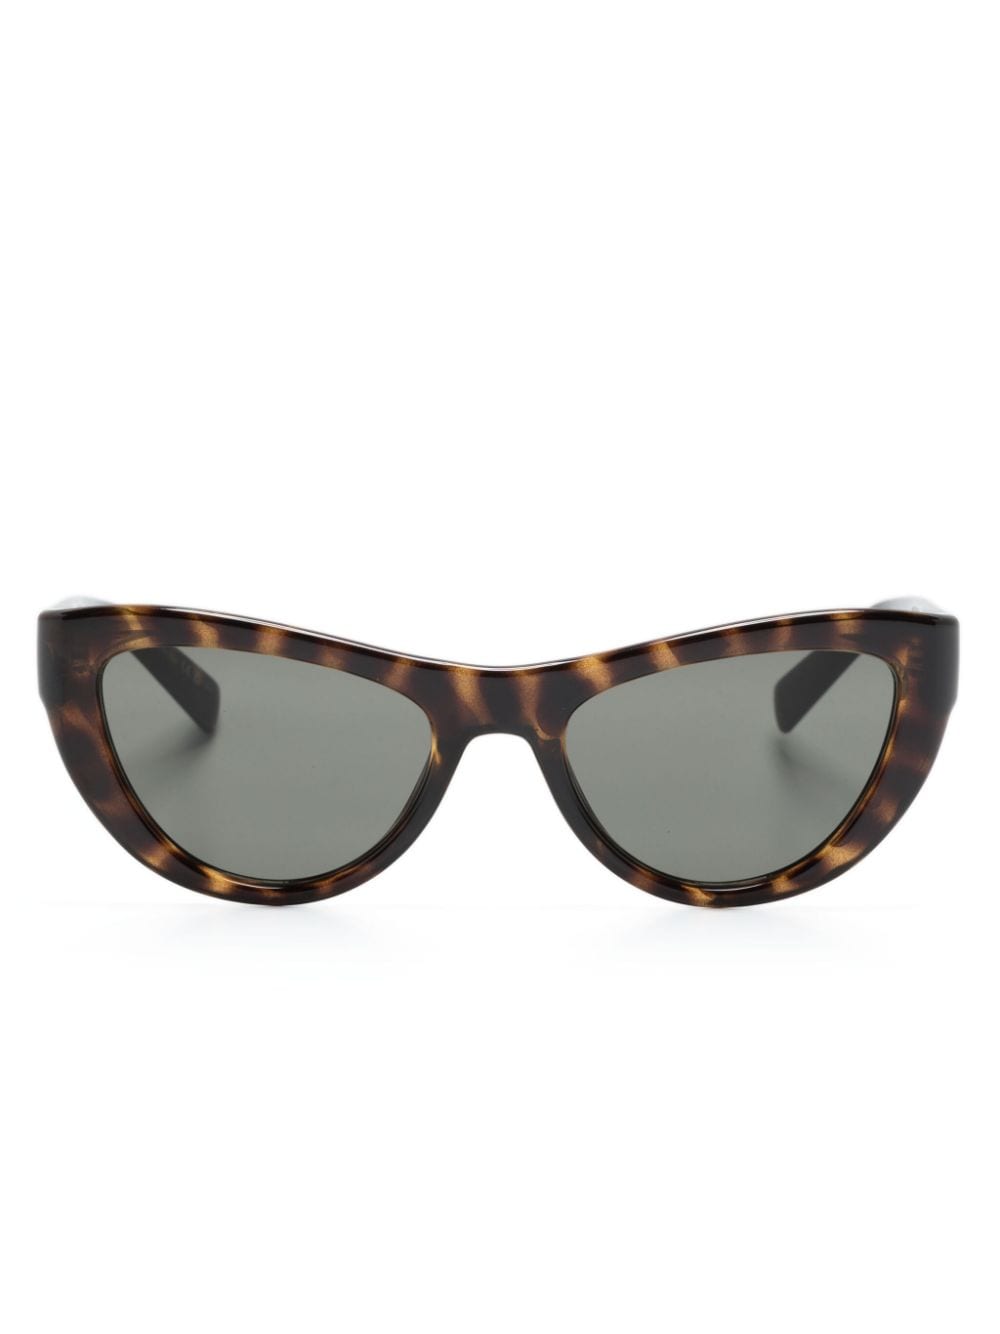 Saint Laurent Eyewear SL676 cat-eye sunglasses - Brown von Saint Laurent Eyewear